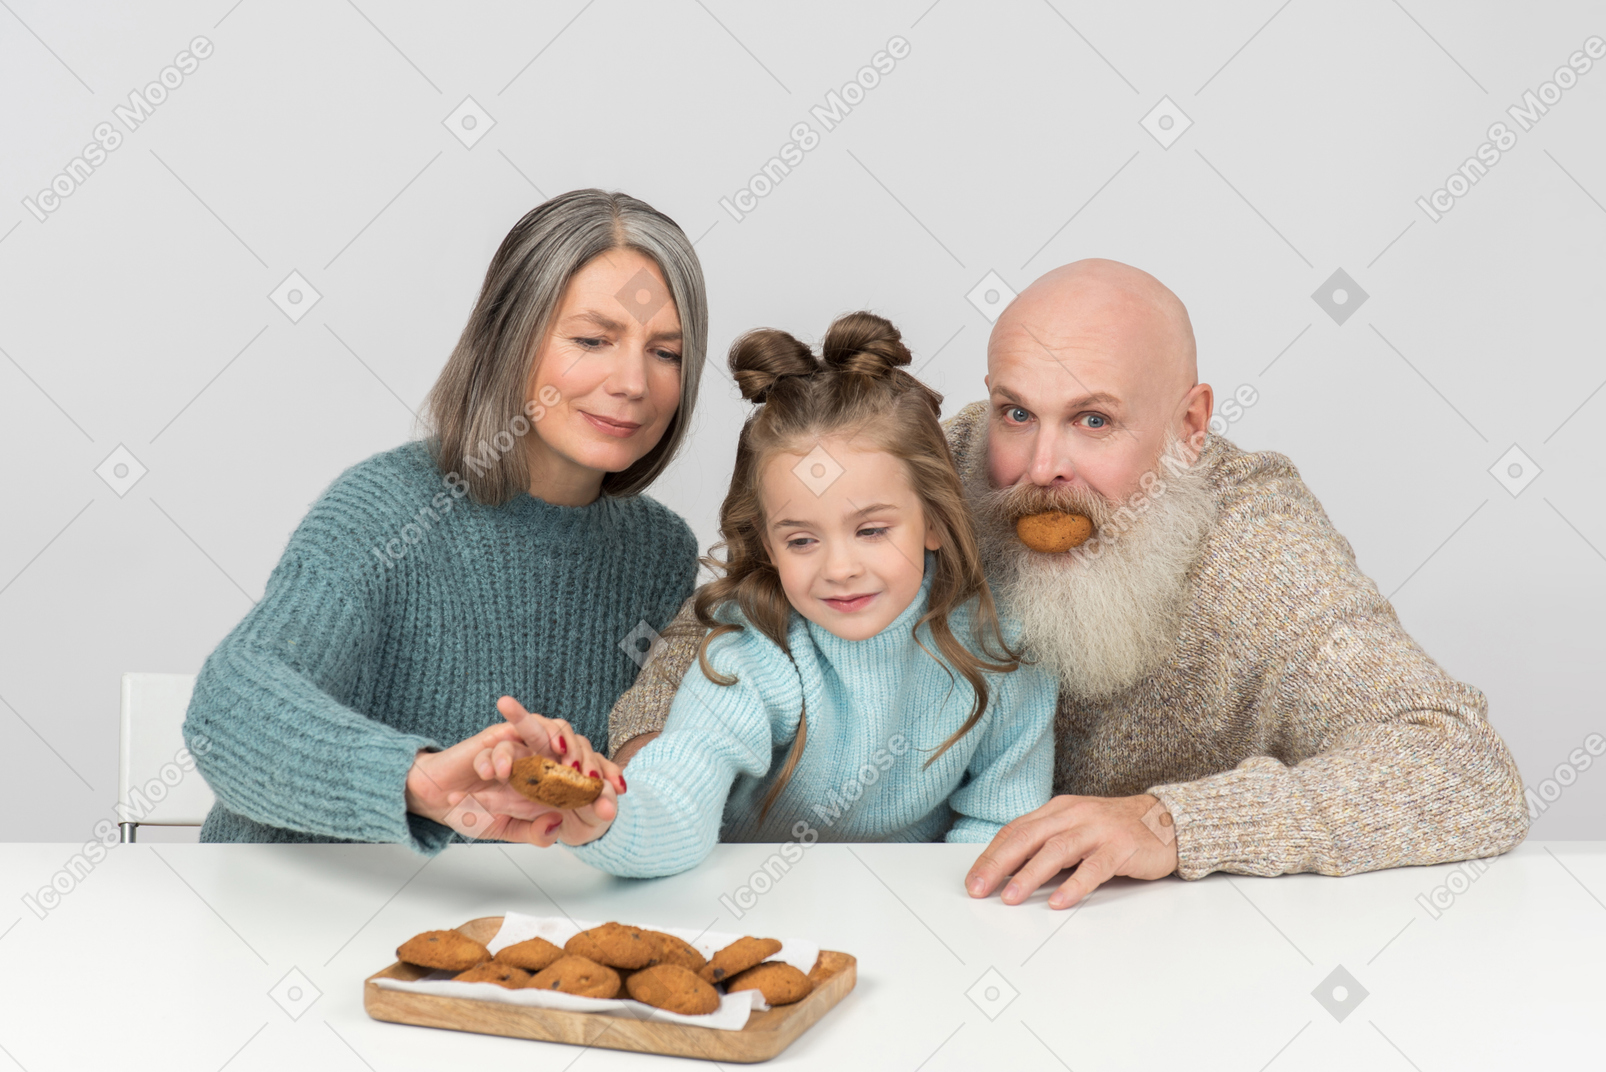 Vovô não pode parar de brincar e vovó pára garoto de ter outro cookie